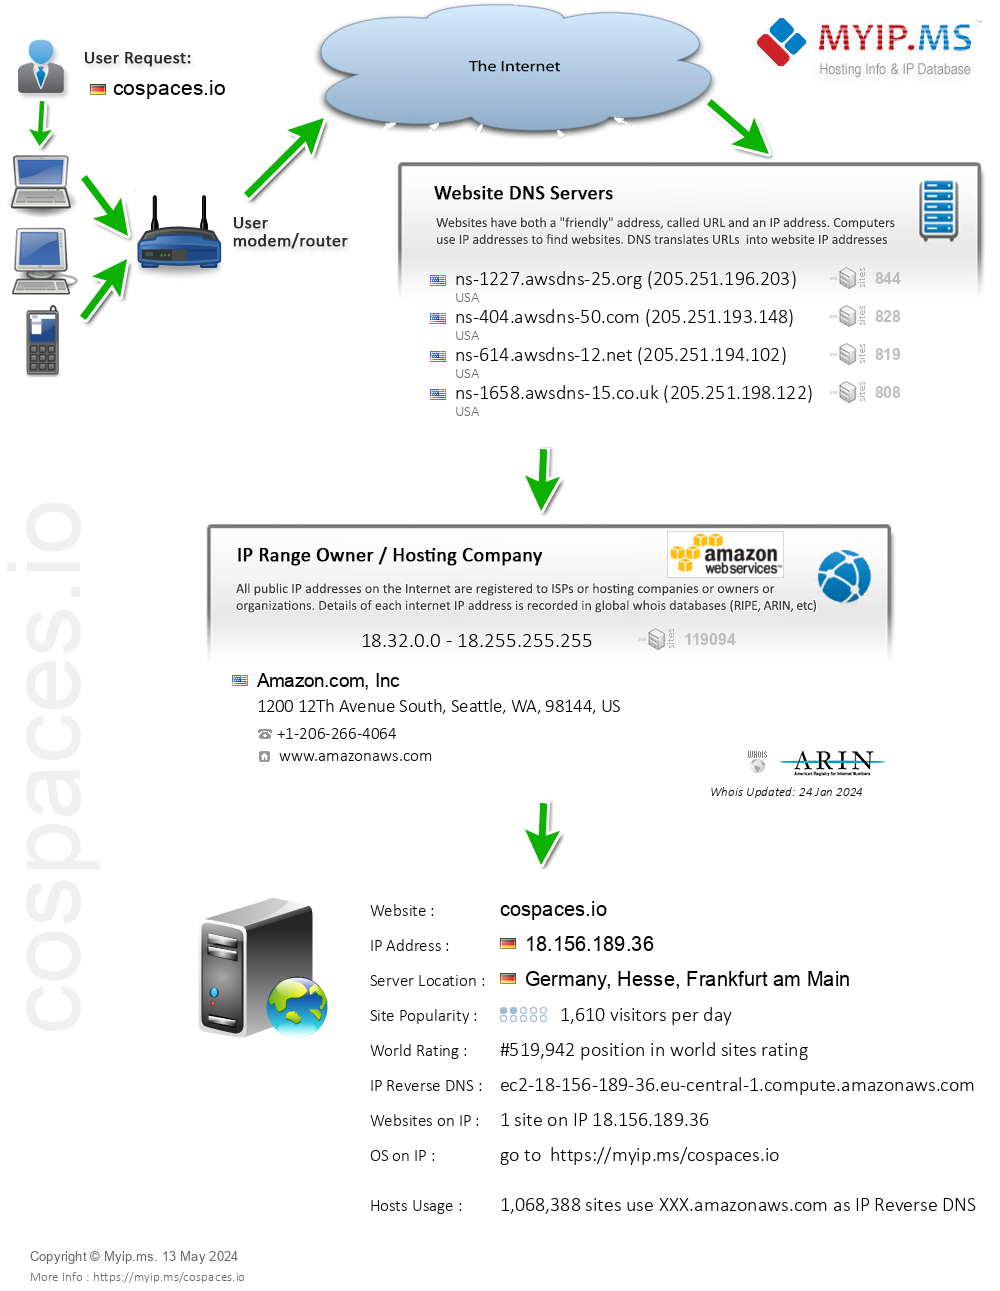 Cospaces.io - Website Hosting Visual IP Diagram